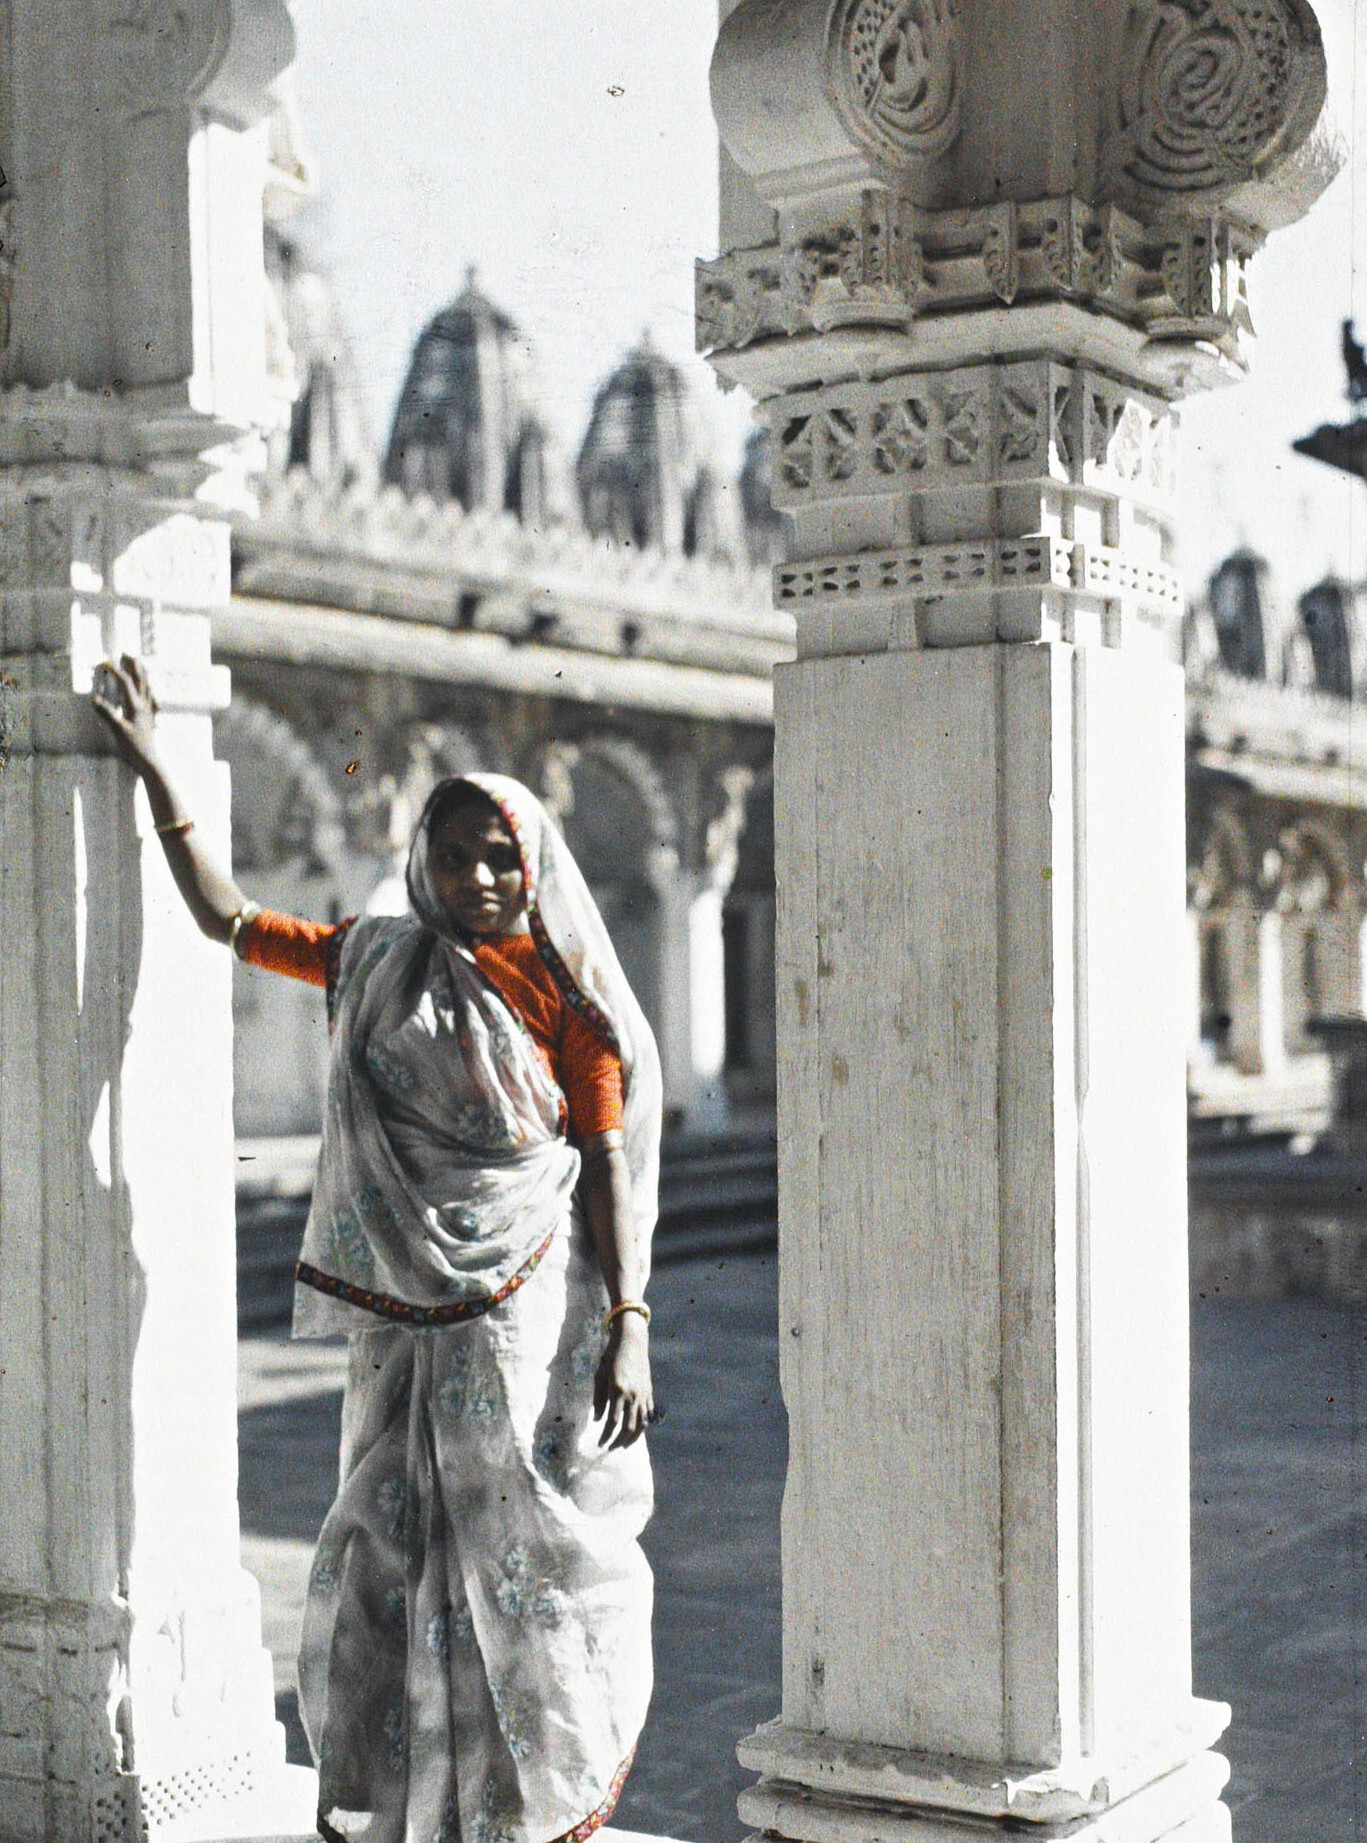 Ахмадабад, Индия. Женщина в сари в храме Хати Сингх Джайна, 1913 год, автор Стефан Пассе (автохром)